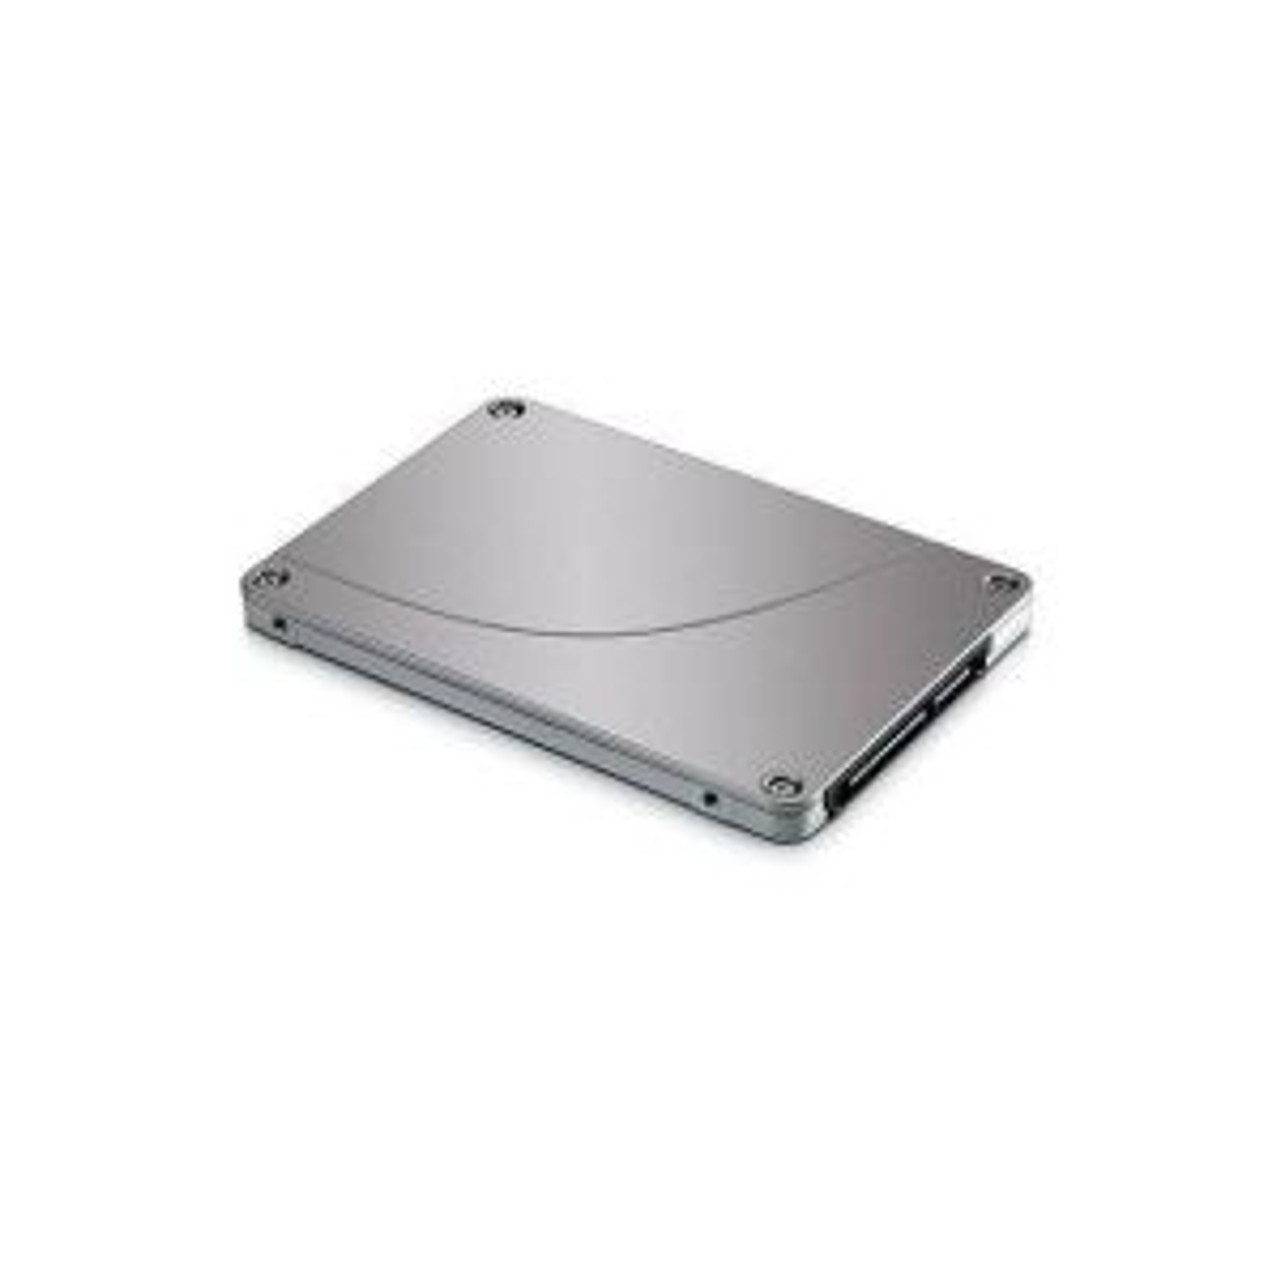 00AJ180 | Lenovo | 240GB SATA 6Gb/s 2.5-inch Enterprise Value Solid State Drive (SSD) Intel S3500